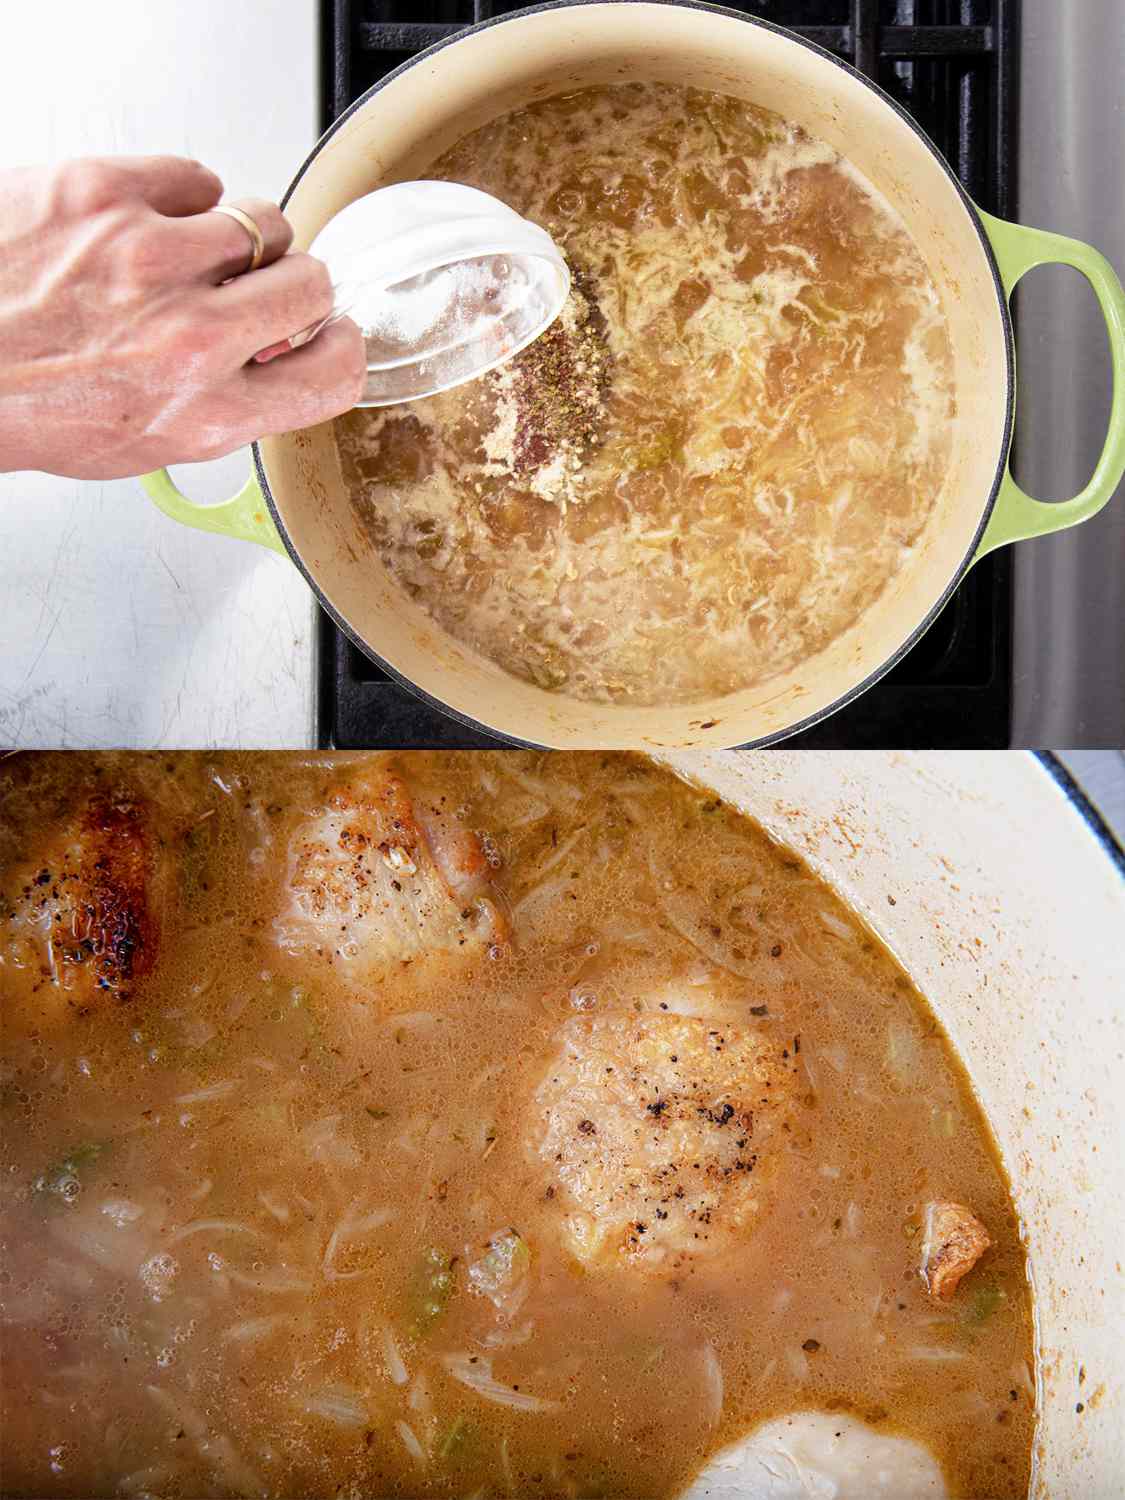 两幅图像拼贴。上图:往沸腾的高汤中加入香料。下面的图片:在高汤中烹饪的鸡肉的特写，显示鸡肉块大部分浸在水里